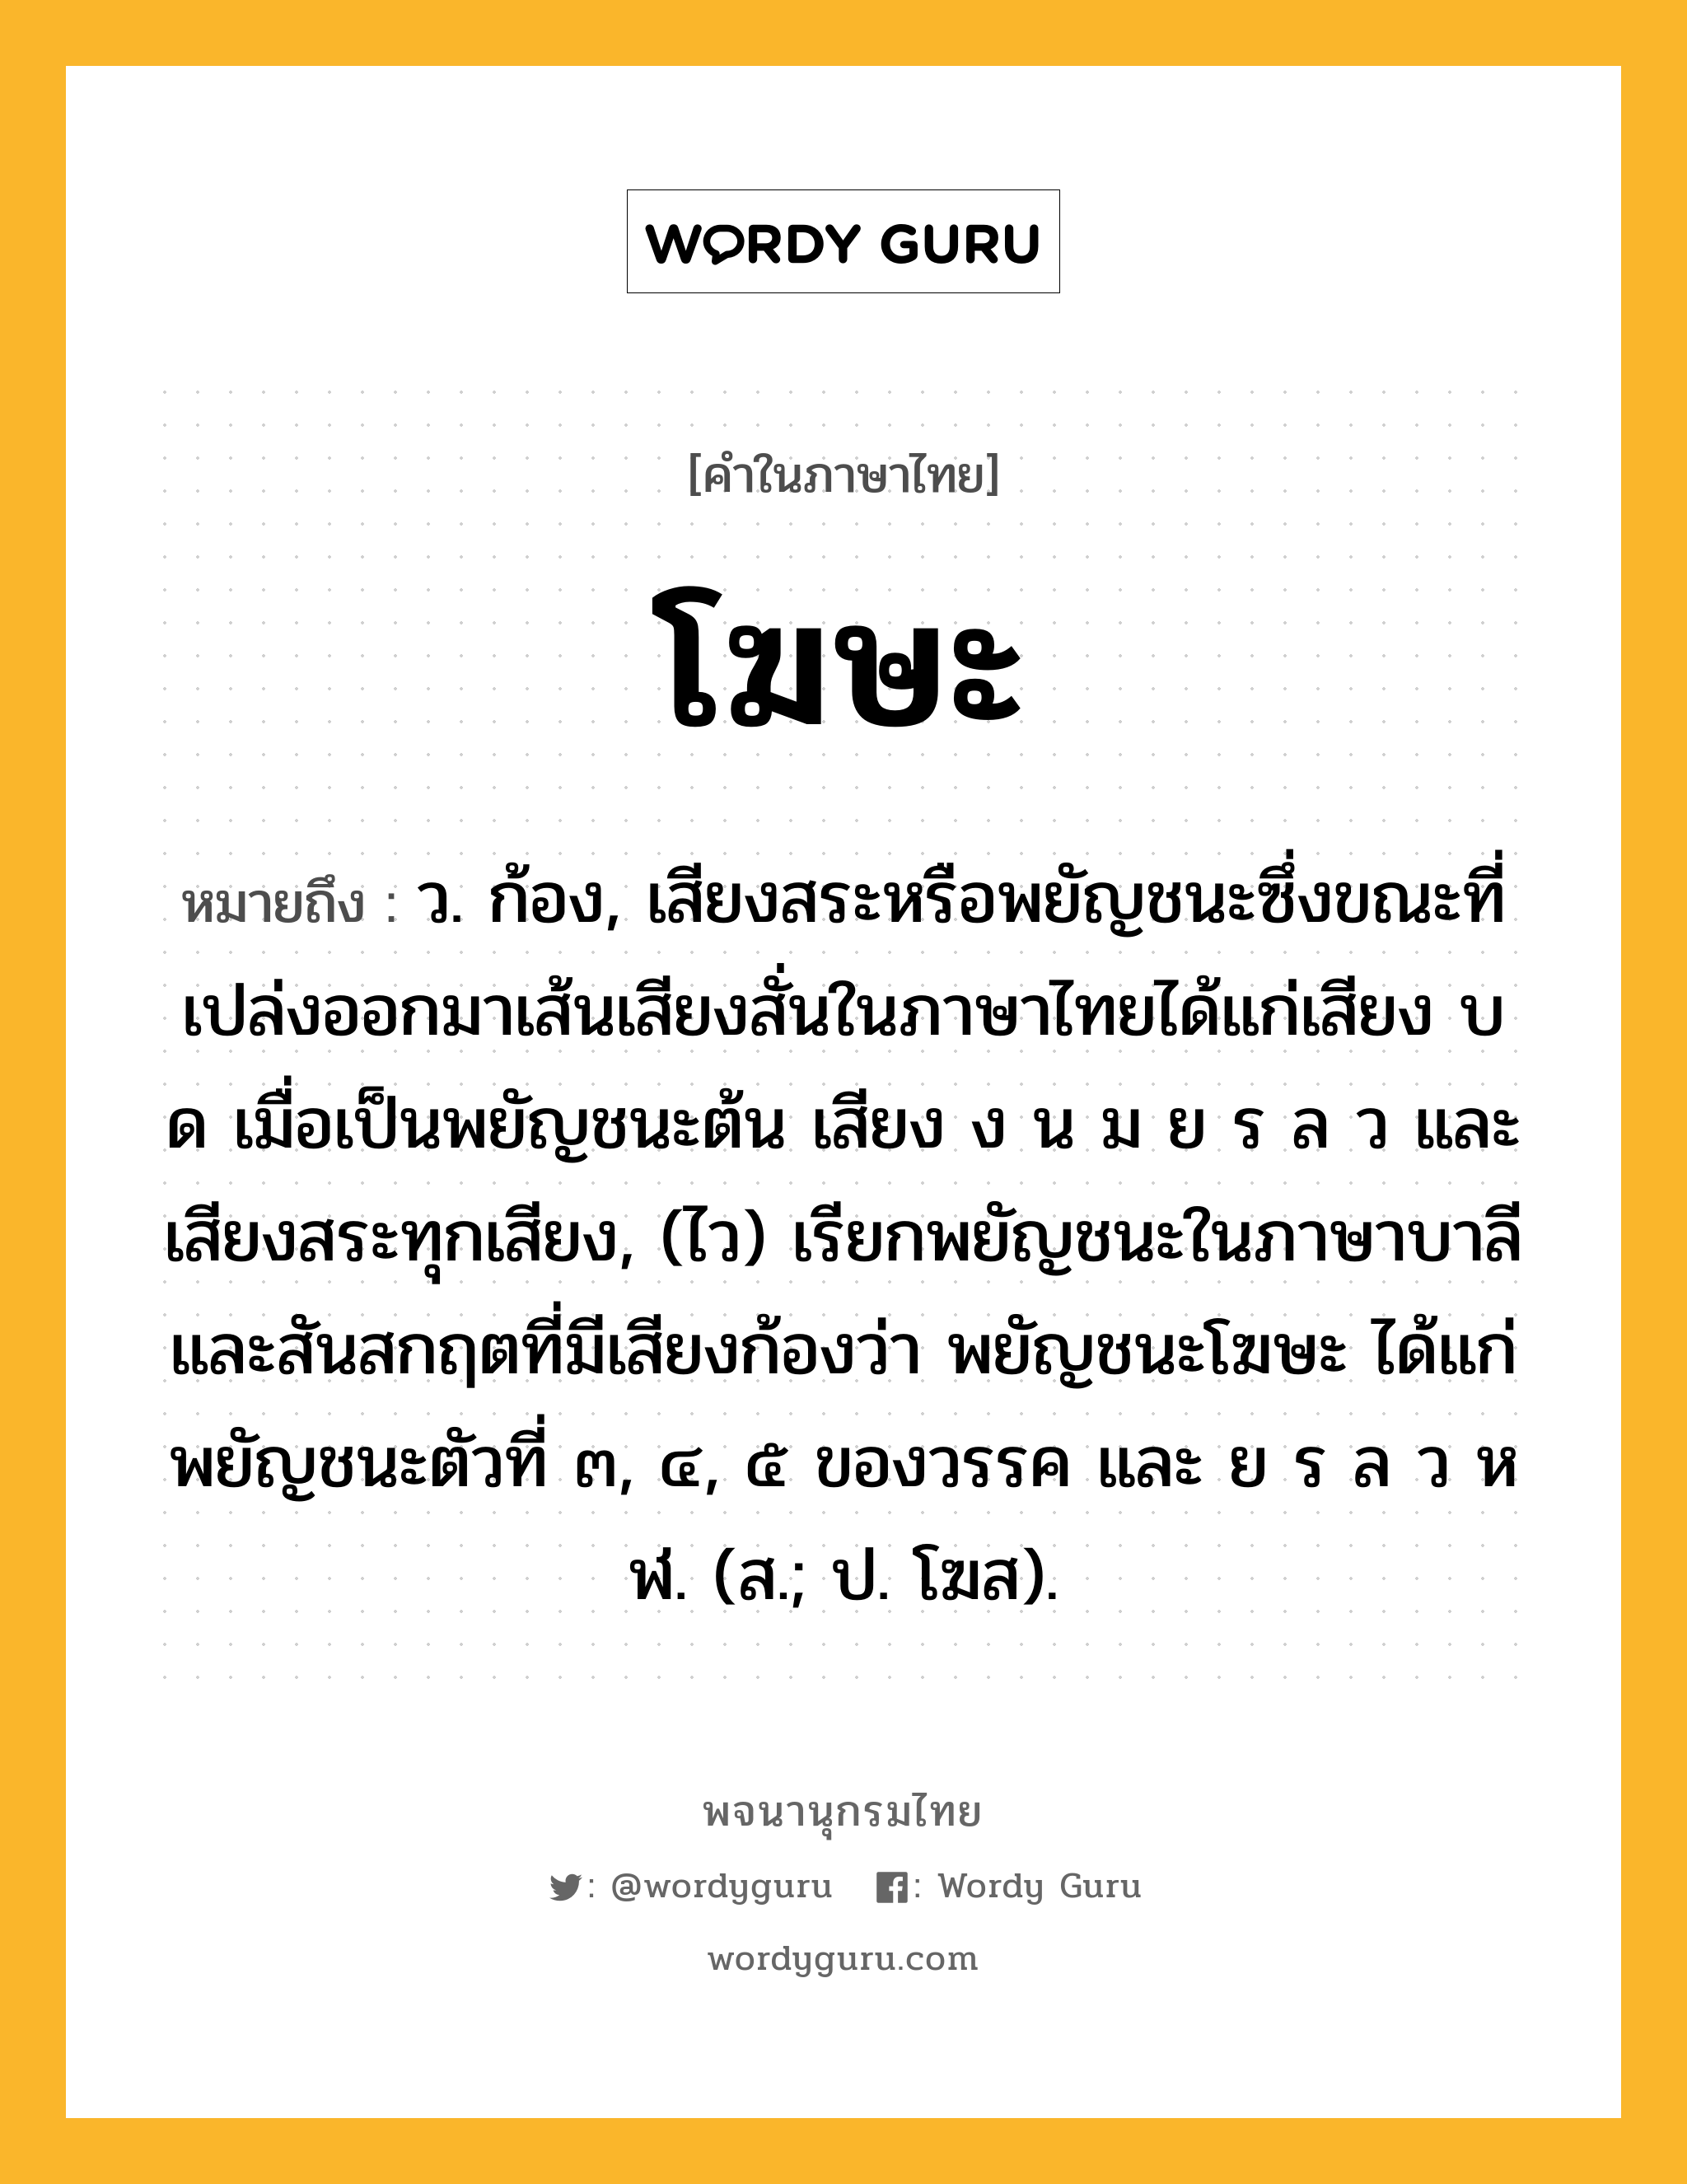 โฆษะ ความหมาย หมายถึงอะไร?, คำในภาษาไทย โฆษะ หมายถึง ว. ก้อง, เสียงสระหรือพยัญชนะซึ่งขณะที่เปล่งออกมาเส้นเสียงสั่นในภาษาไทยได้แก่เสียง บ ด เมื่อเป็นพยัญชนะต้น เสียง ง น ม ย ร ล ว และเสียงสระทุกเสียง, (ไว) เรียกพยัญชนะในภาษาบาลีและสันสกฤตที่มีเสียงก้องว่า พยัญชนะโฆษะ ได้แก่ พยัญชนะตัวที่ ๓, ๔, ๕ ของวรรค และ ย ร ล ว ห ฬ. (ส.; ป. โฆส).